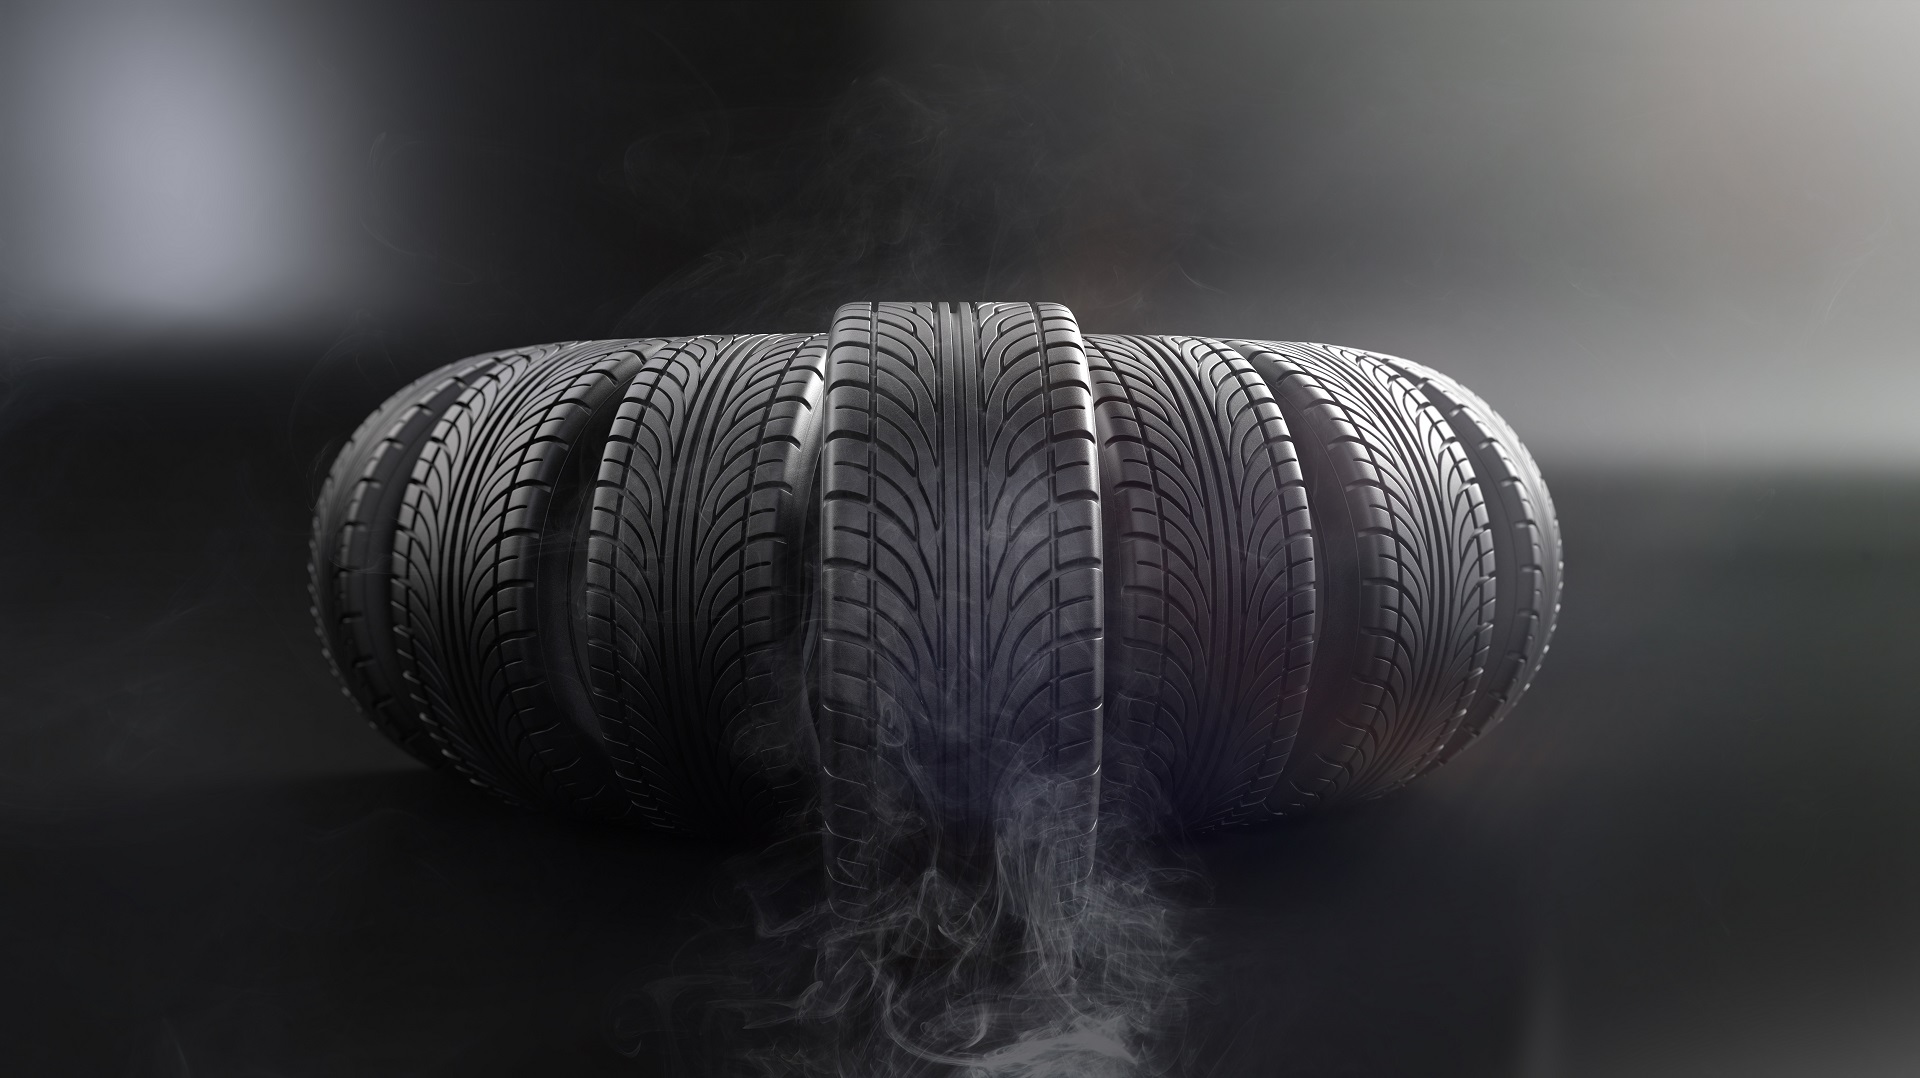 Životnost pneumatik: jak dlouho lze pneumatiky používat?